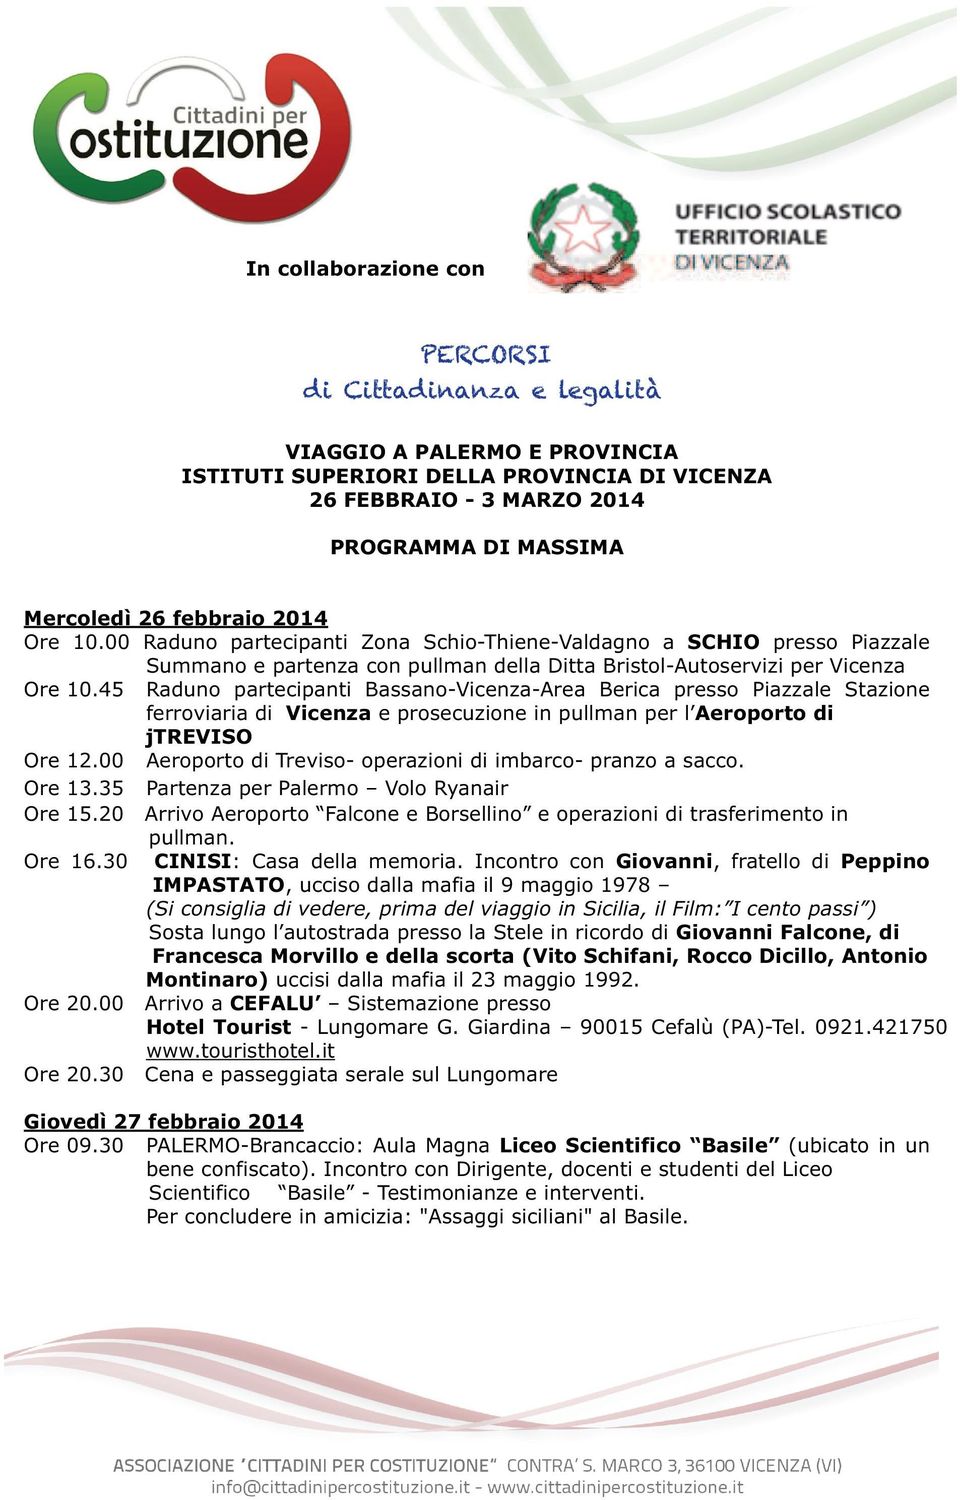 45 Raduno partecipanti Bassano-Vicenza-Area Berica presso Piazzale Stazione ferroviaria di Vicenza e prosecuzione in pullman per l Aeroporto di jtreviso Ore 12.